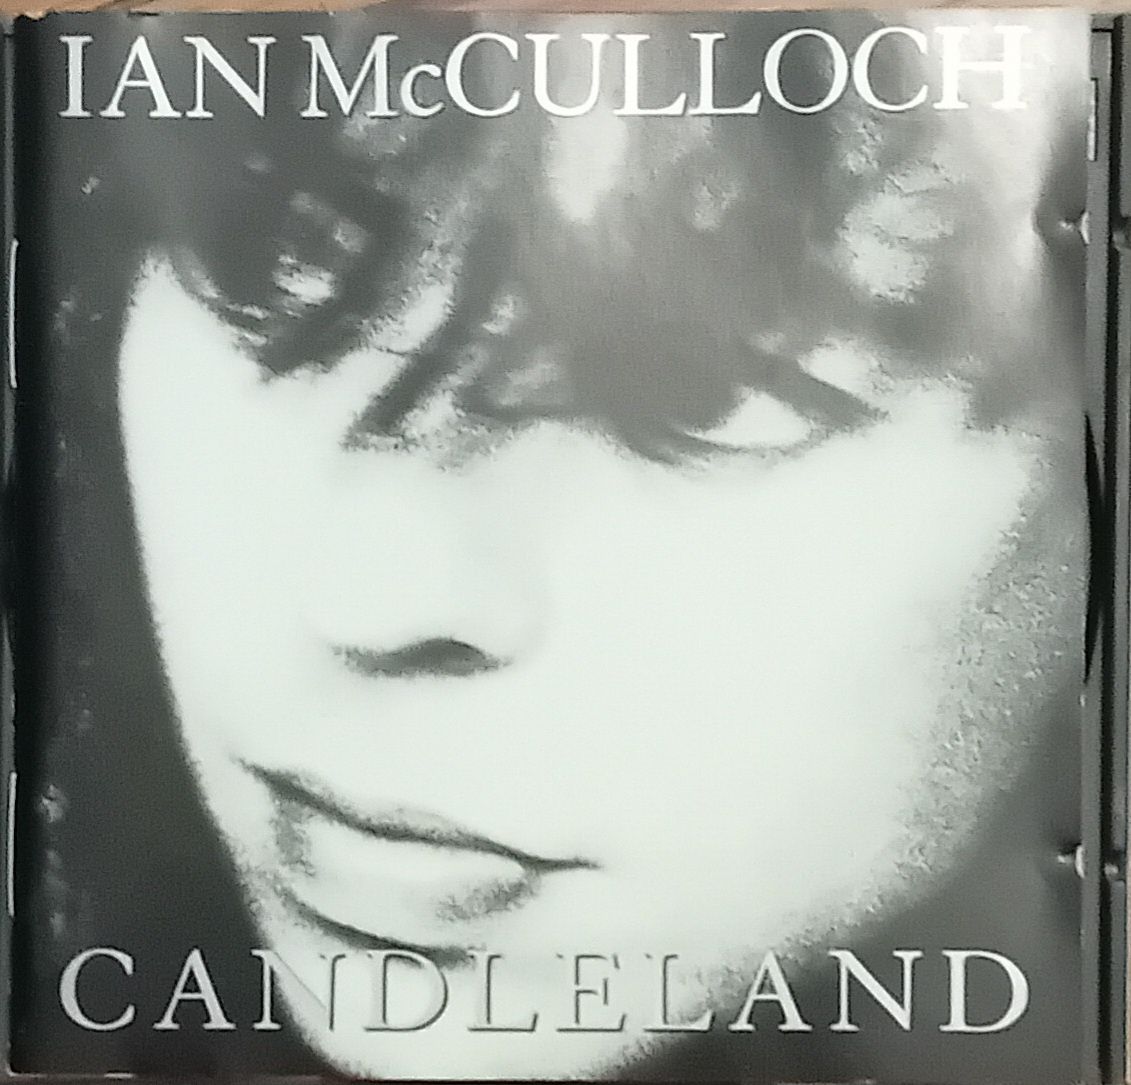 CDs: Ian McCuloch, Secret Machines, Stephin Merritt